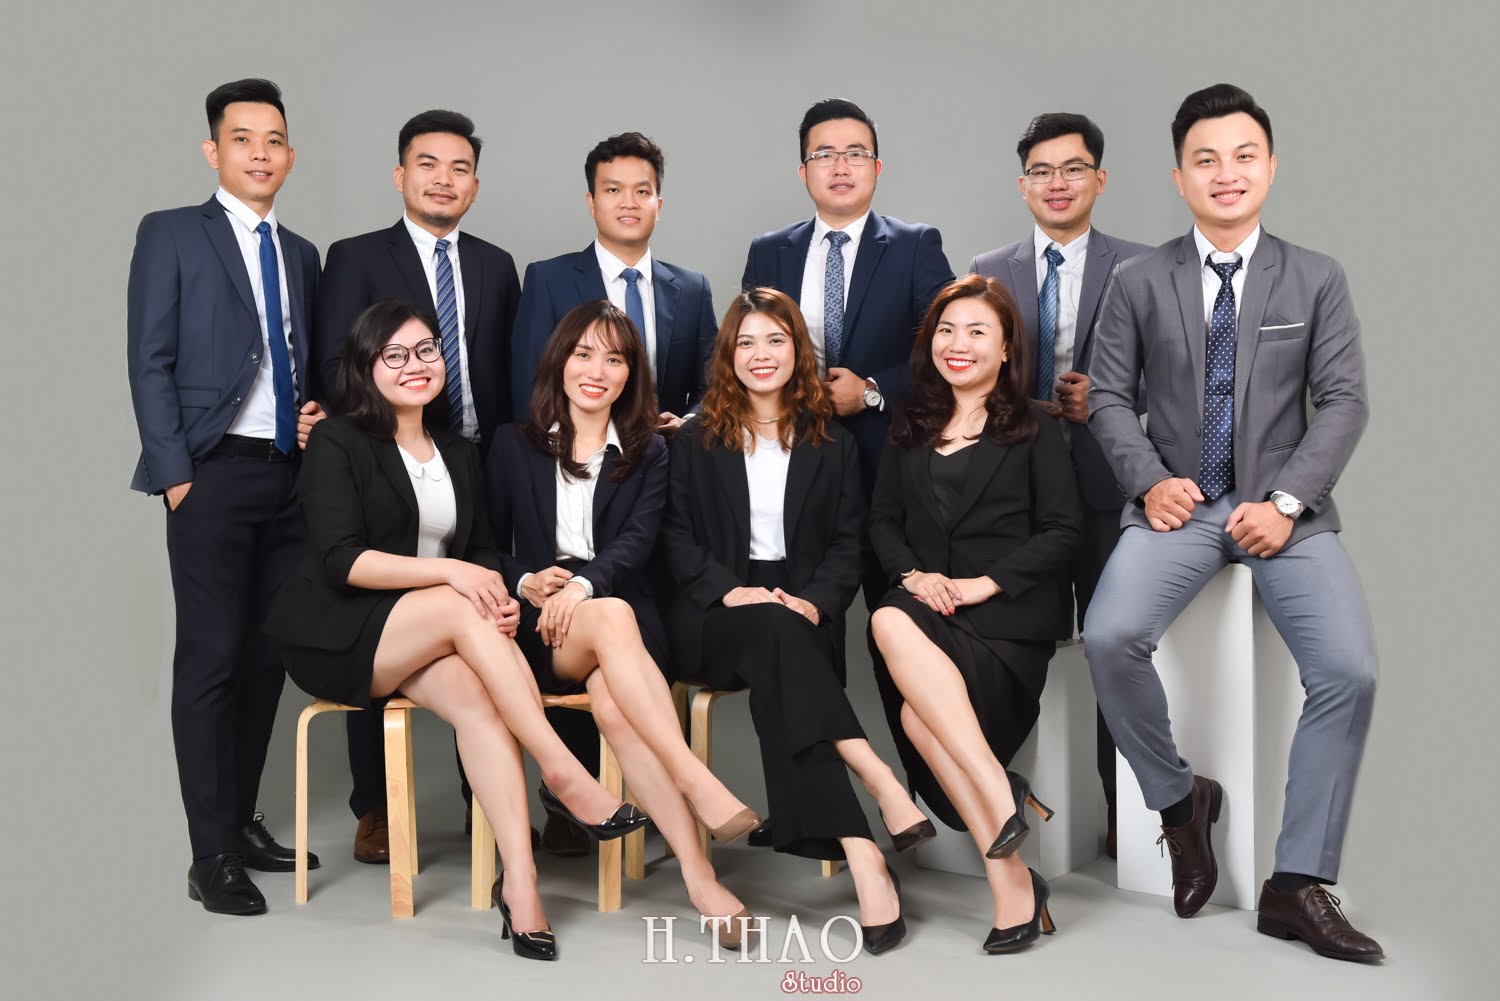 Anh profile cong ty 15 - #3 concept chụp ảnh công ty chuyên nghiệp nhất hiện nay – HThao Studio